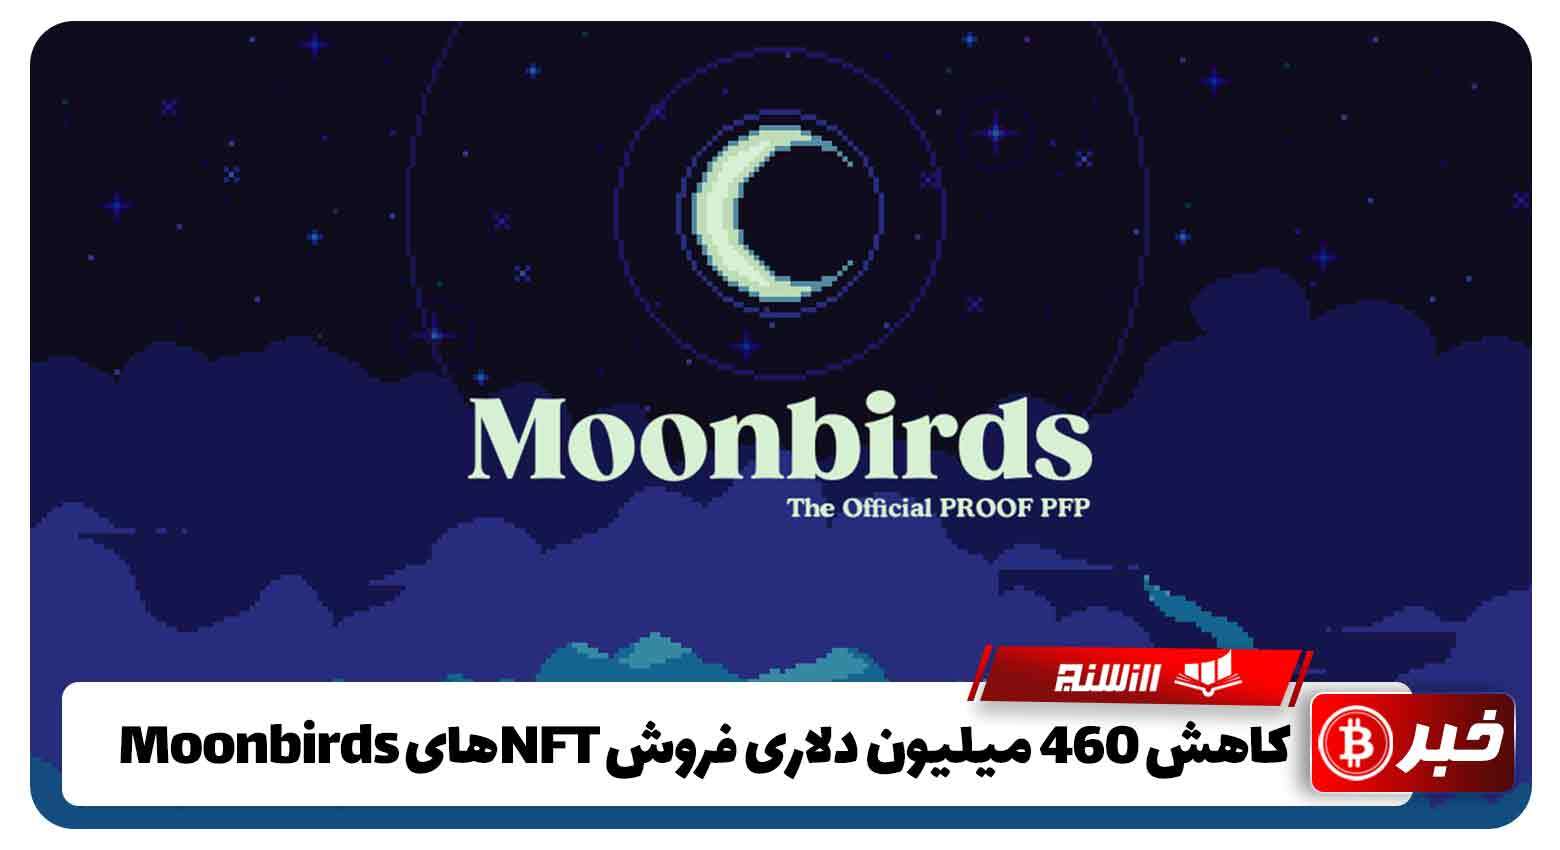 کاهش 460 میلیون دلاری فروش NFTهای Moonbirds